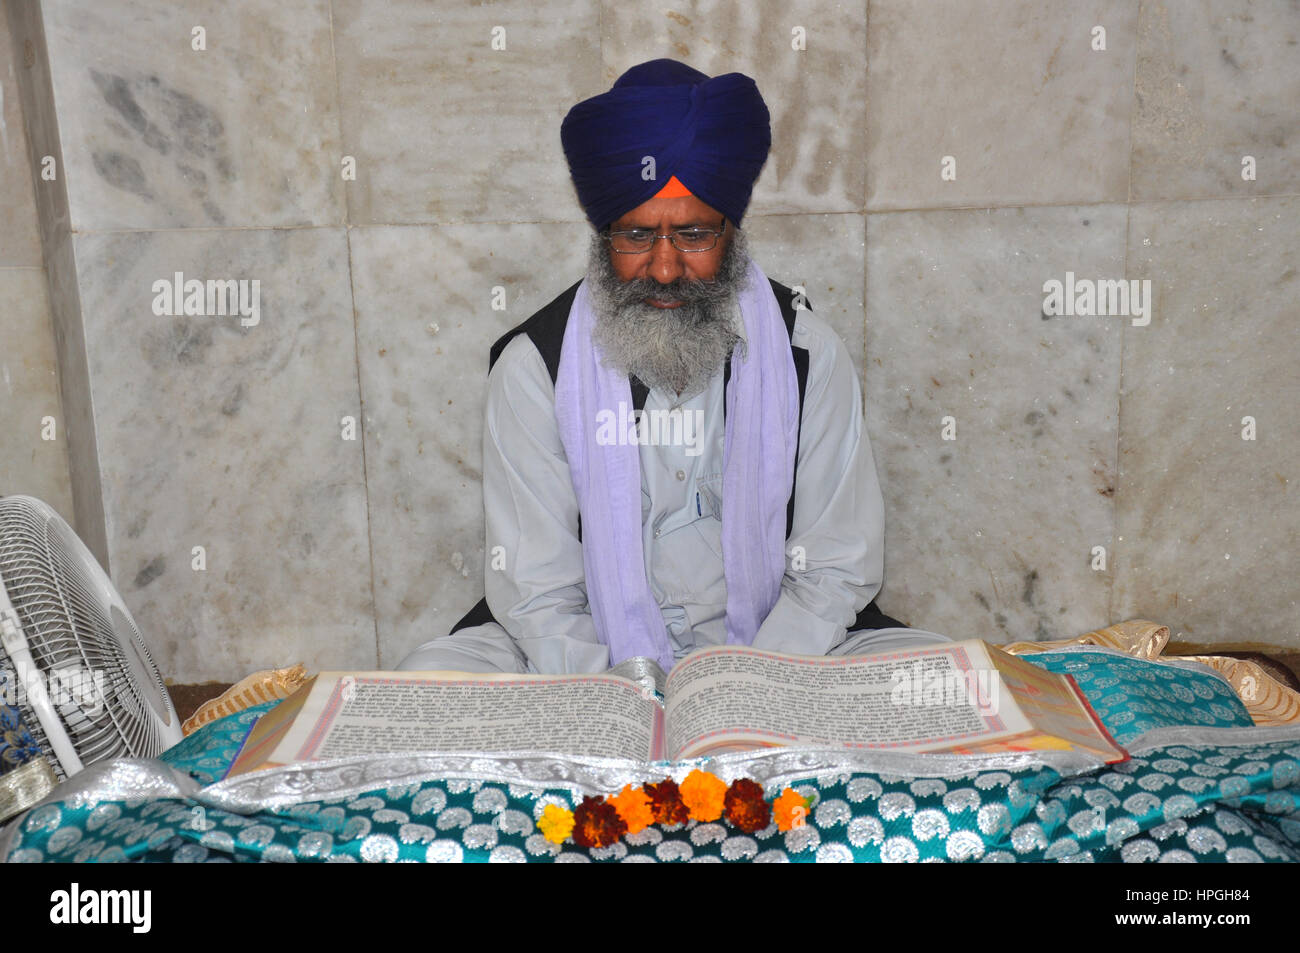 Sikh grandi che legge le Scritture. Le Scritture del Sikhismo sono conosciute come il Guru Granth Sahib, il Guru vivente del Sikhism. (Foto © Saji Maramon) Foto Stock